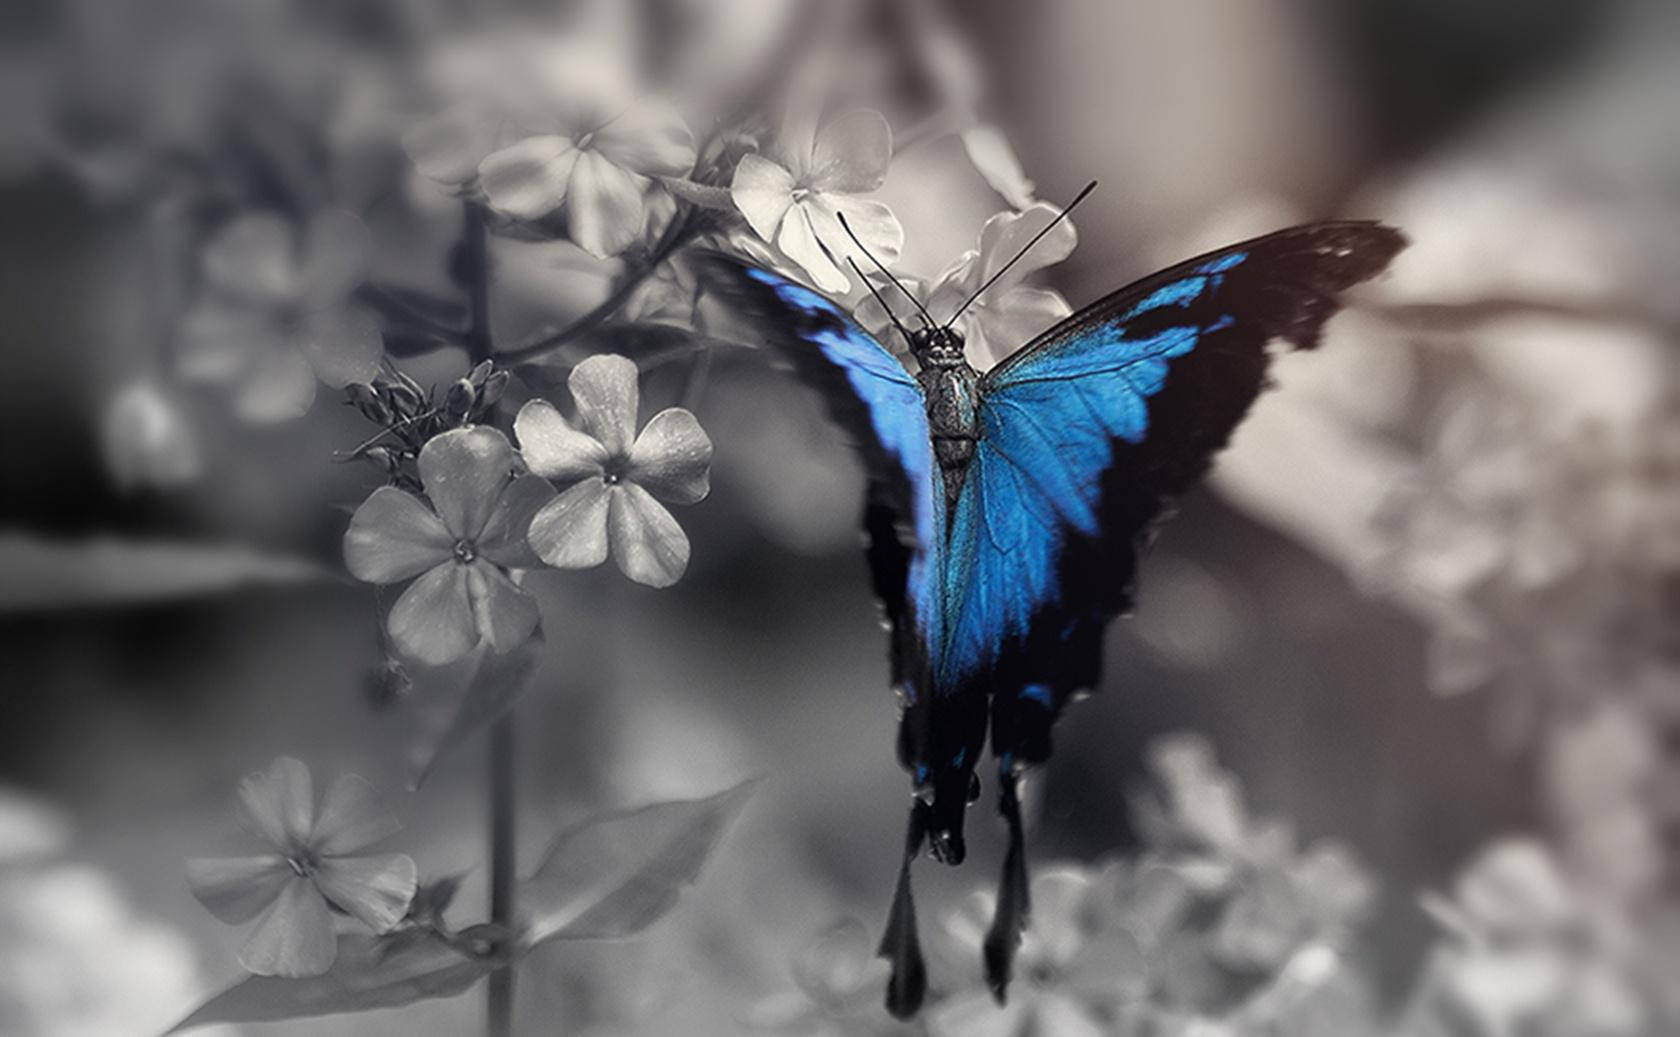  Schmetterling Hintergrundbild 1680x1037. Downloaden Blauerschmetterling Ästhetisches Hd Bild Wallpaper